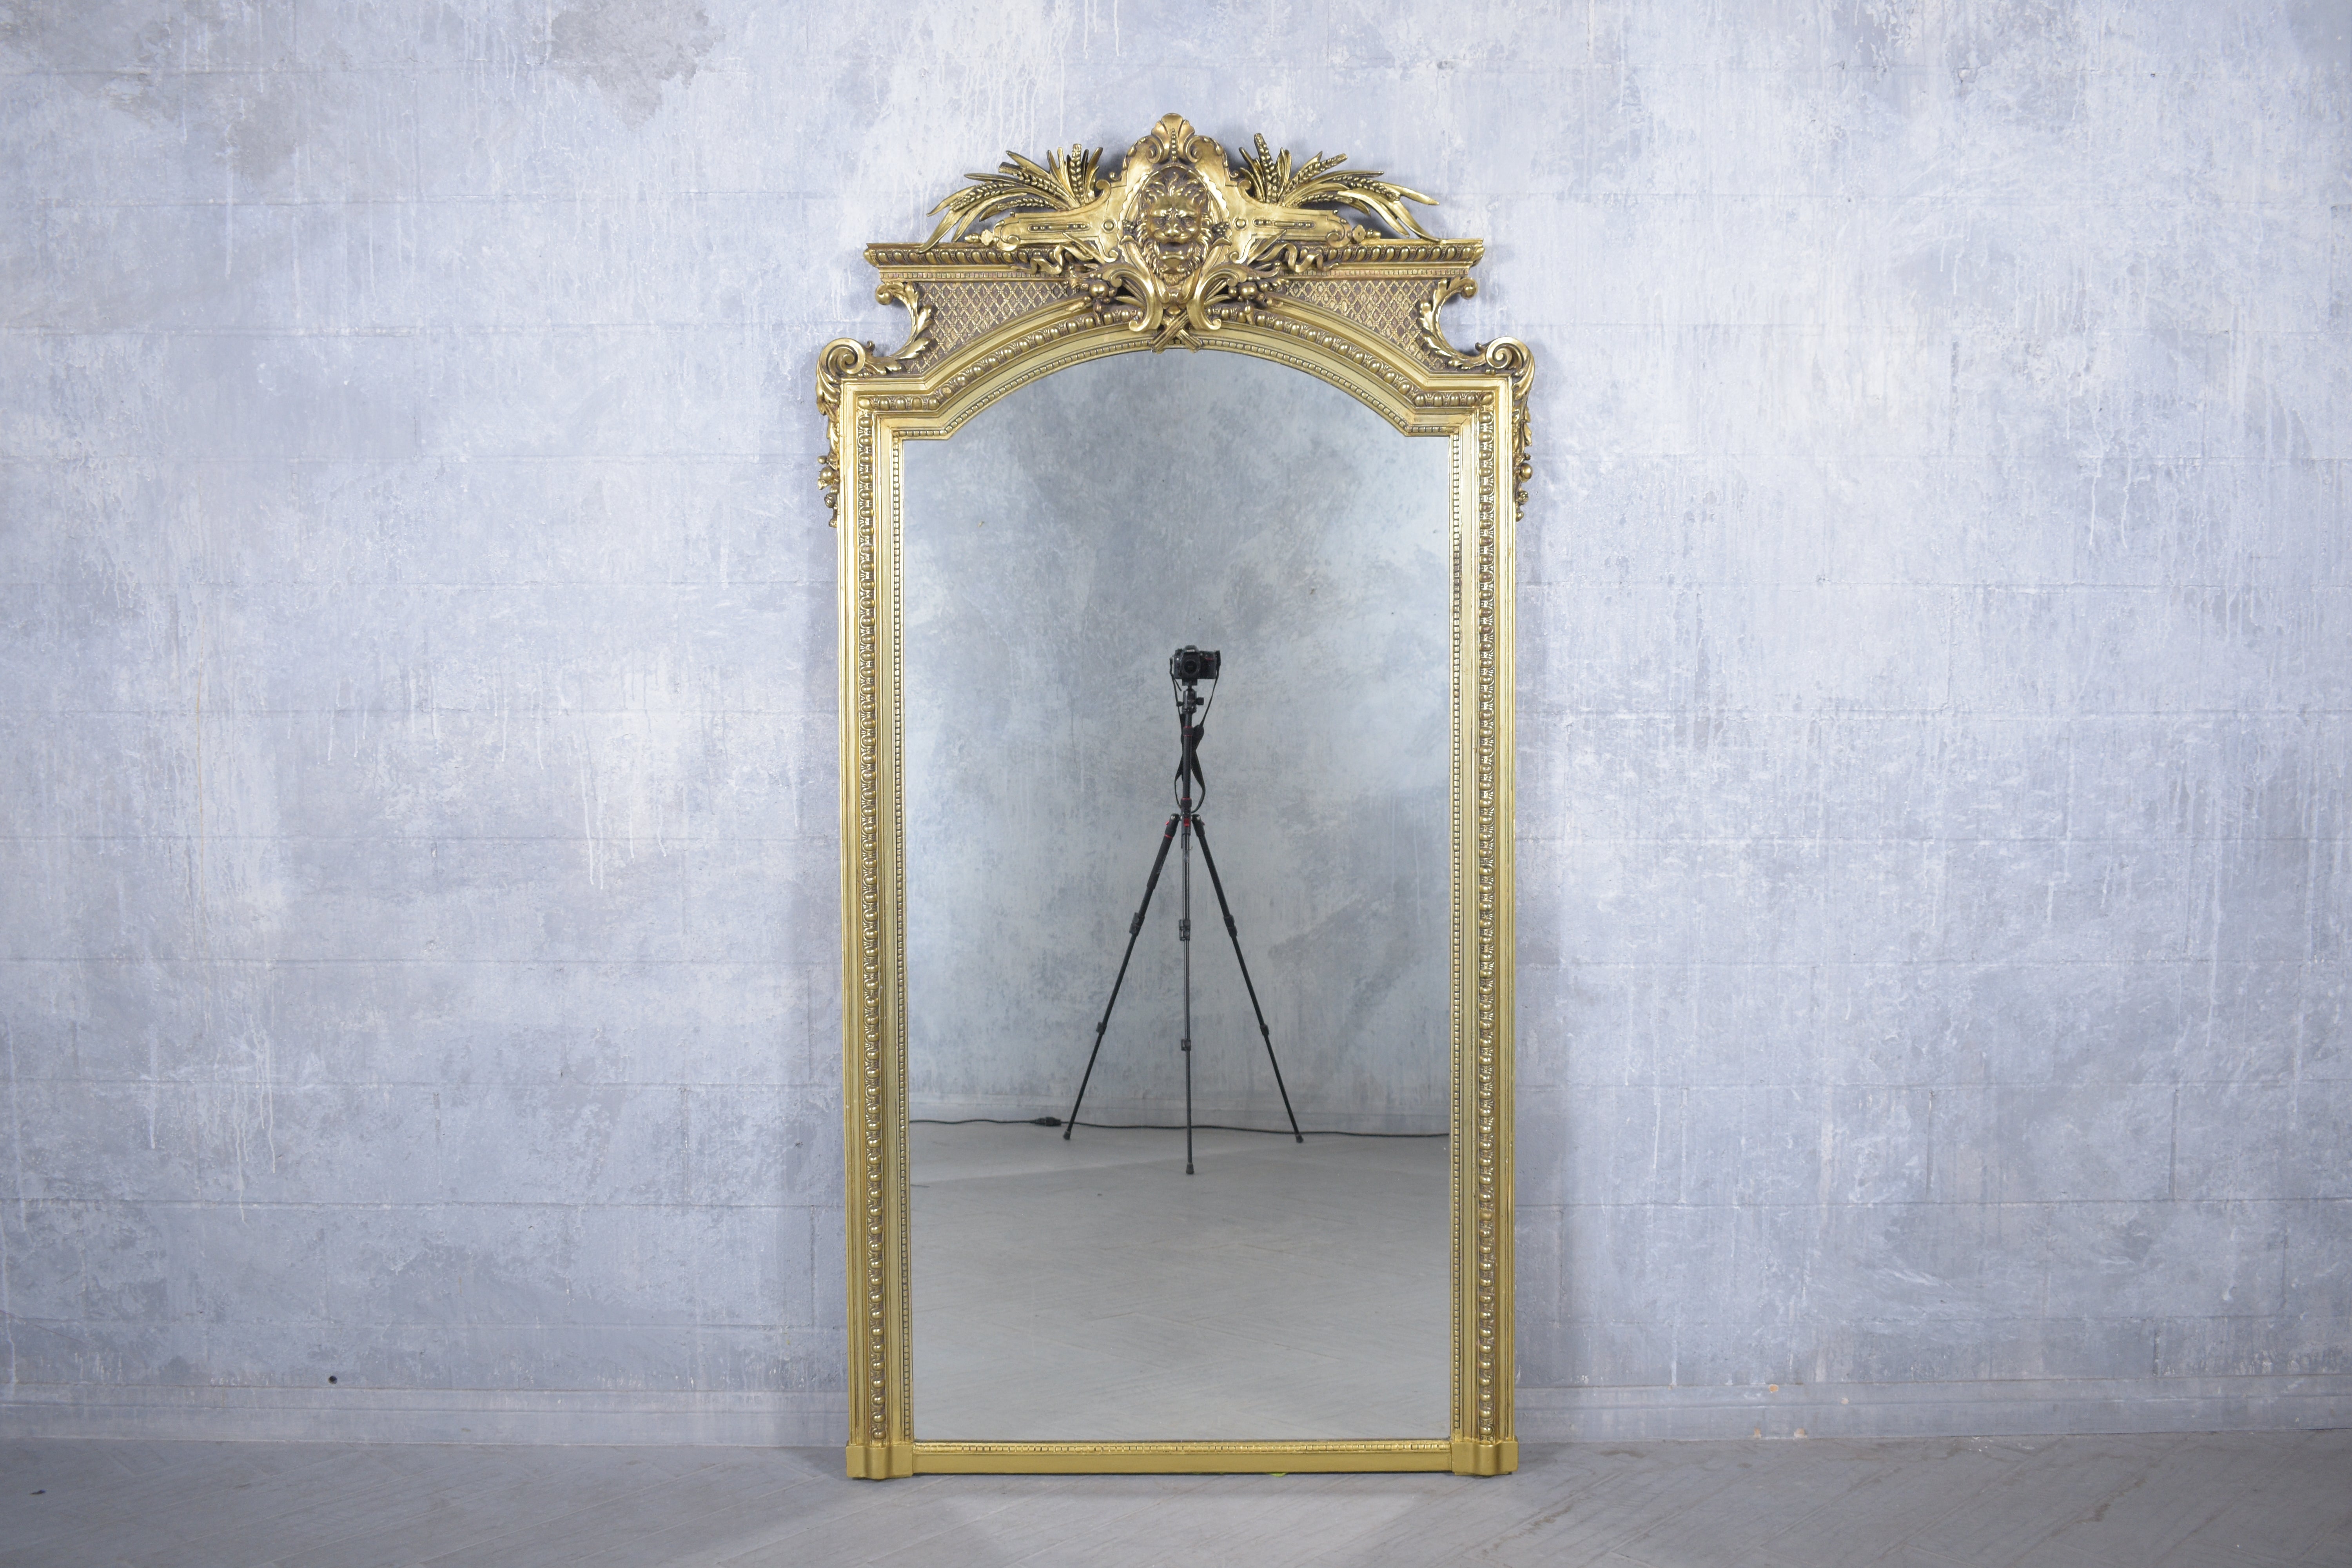 Treten Sie ein in die Welt der klassischen französischen Eleganz mit unserem Standspiegel aus dem späten 19. Jahrhundert, der sorgfältig restauriert wurde, um seine Kunstfertigkeit und Handwerkskunst zu präsentieren. Aus hochwertigem Massivholz und